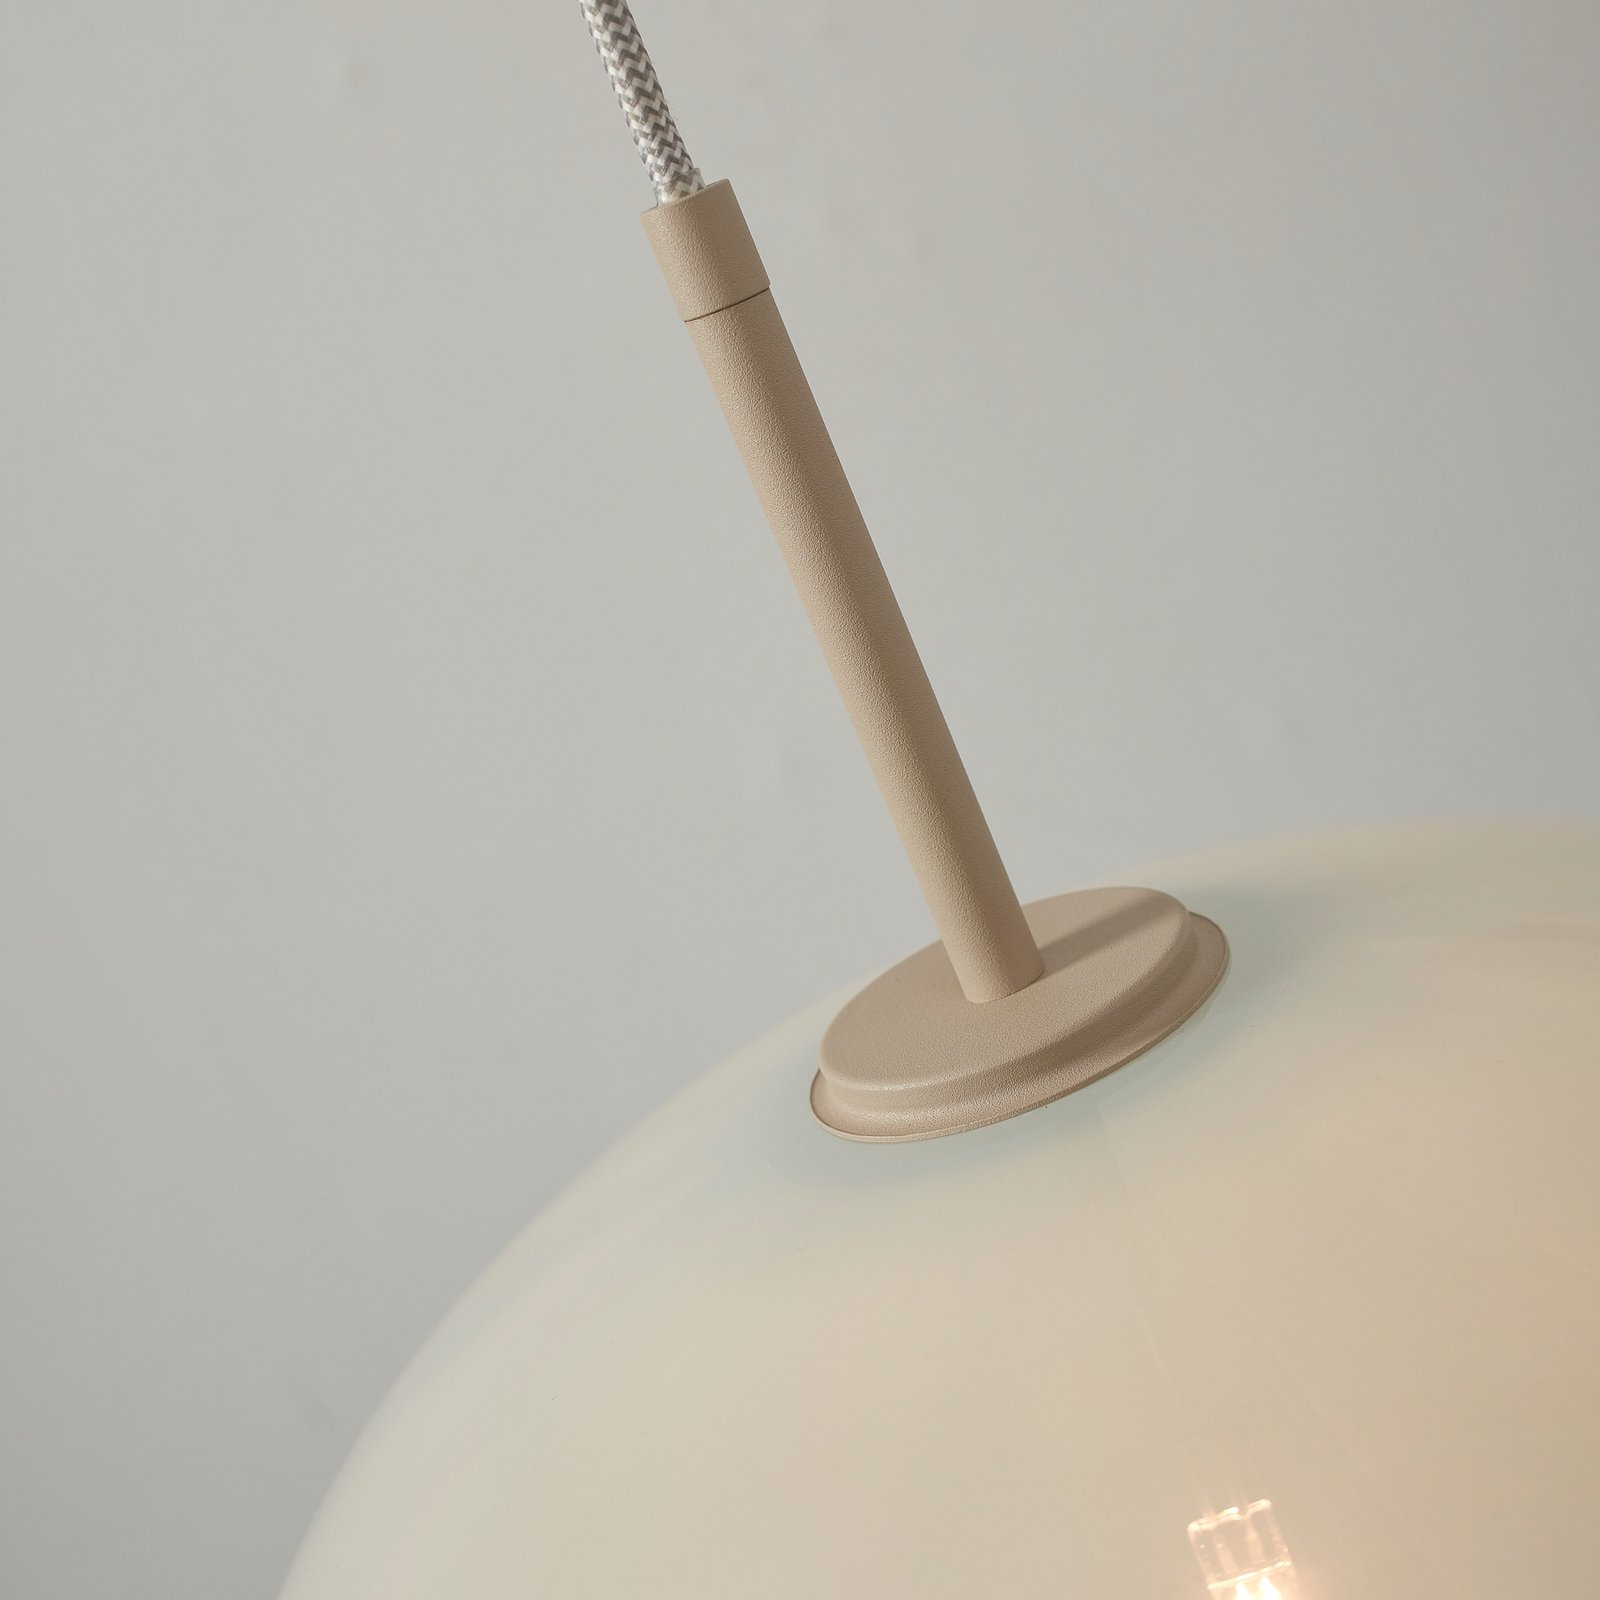 Trata-se da luminária suspensa RoMi Bologna, branco leite, mono-lâmpada